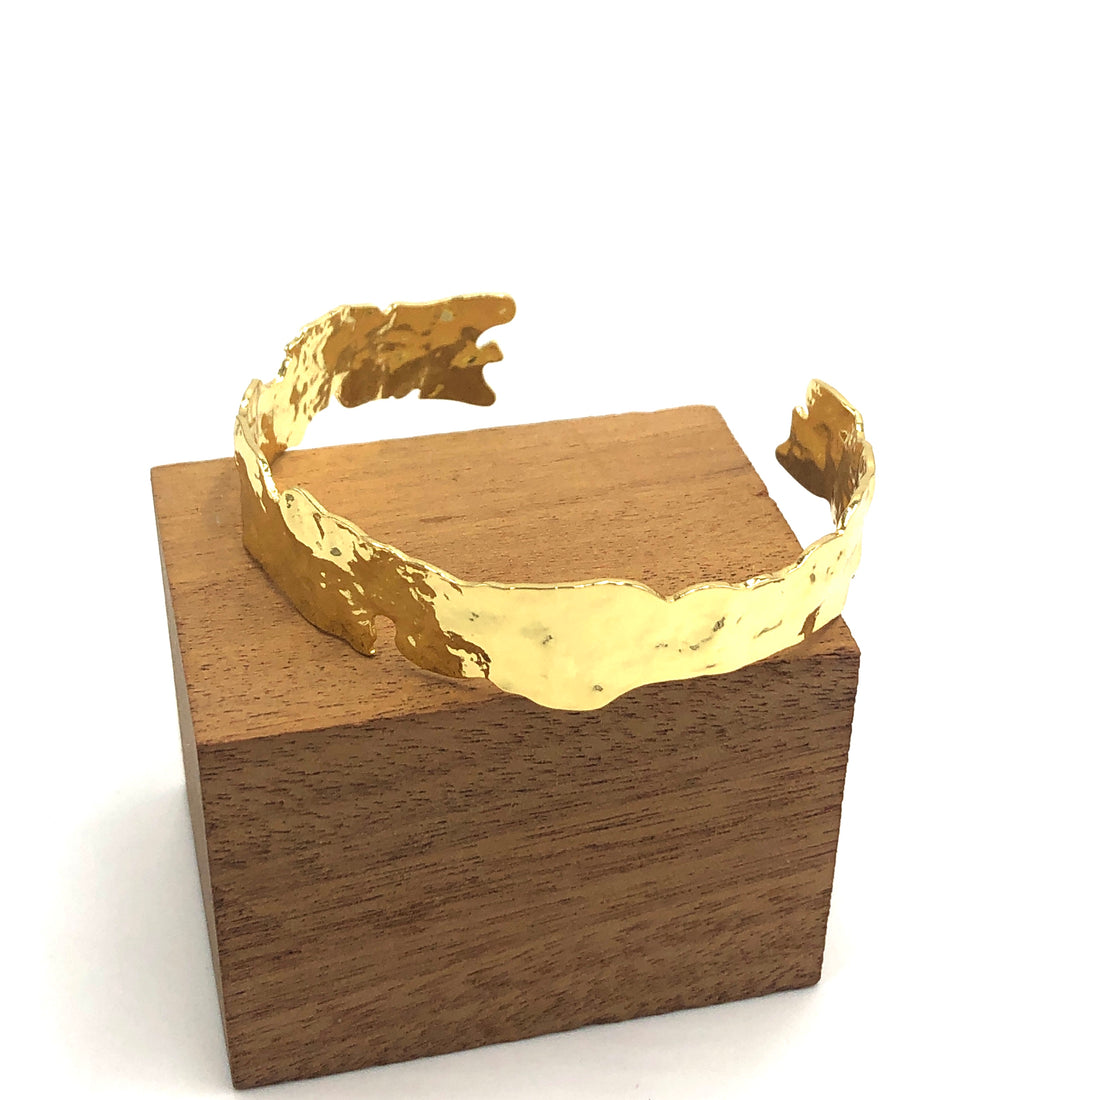 Raw Gold Leafed Cuff Bracelet